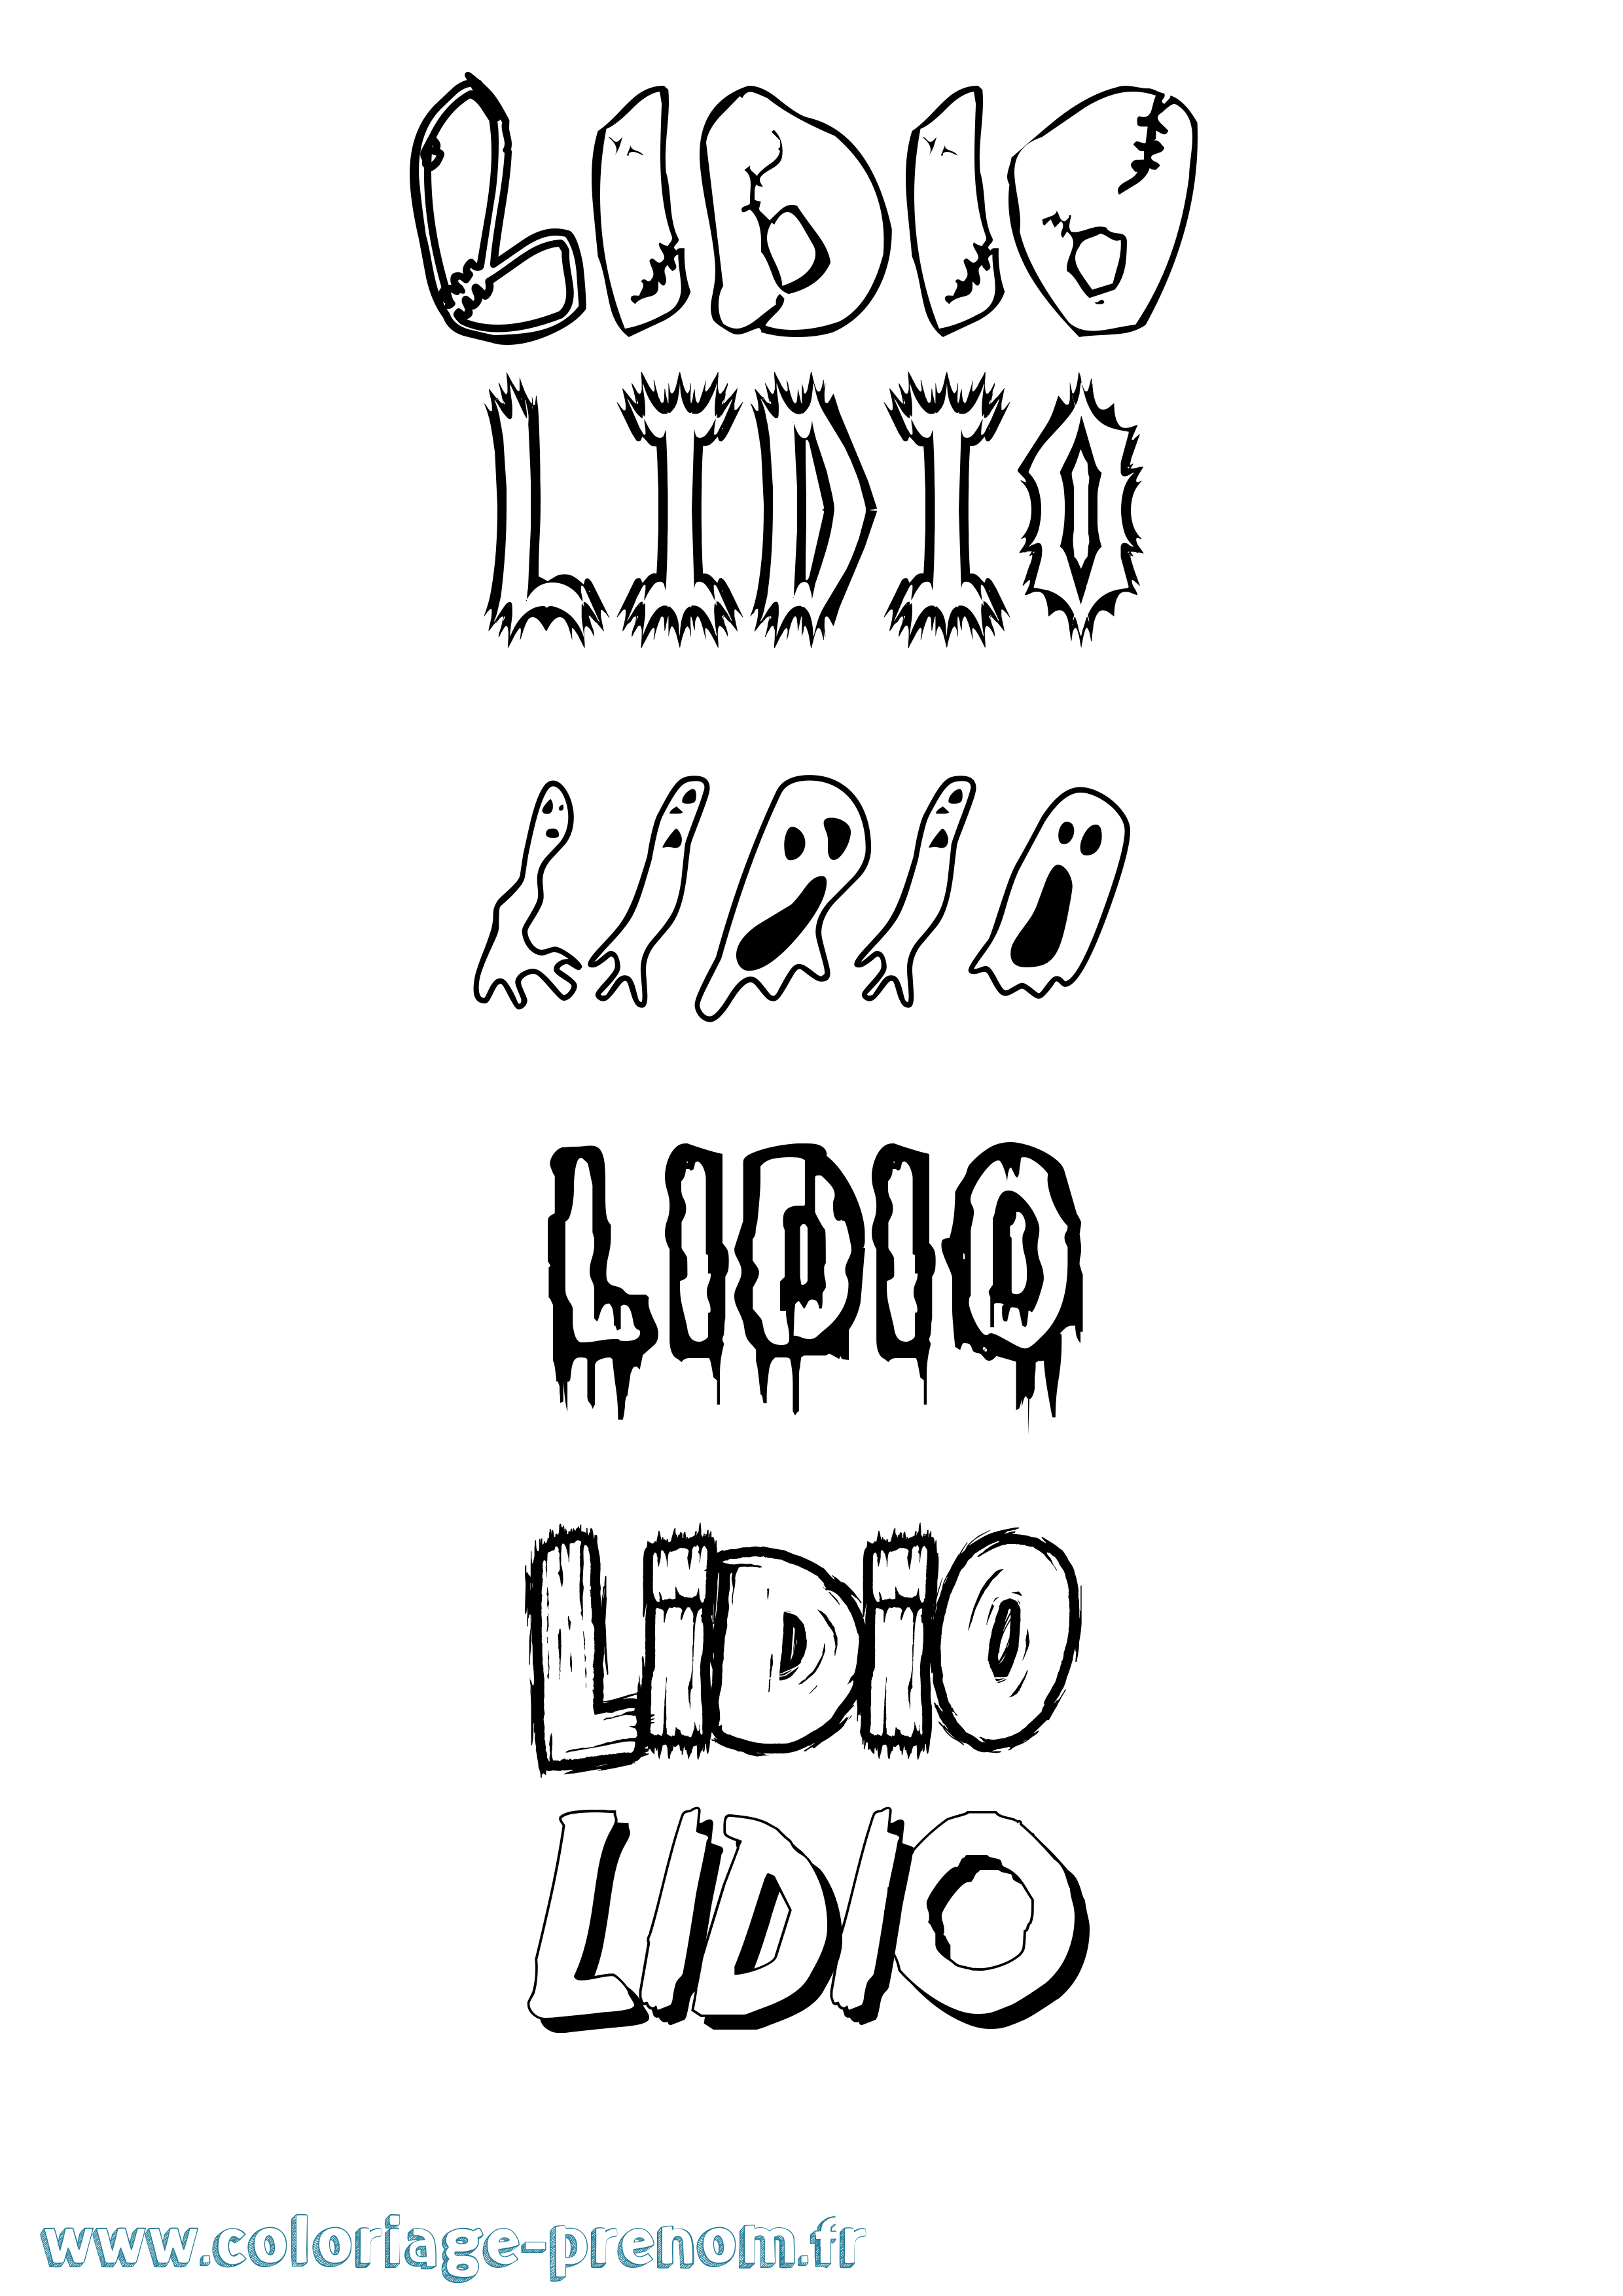 Coloriage prénom Lidio Frisson